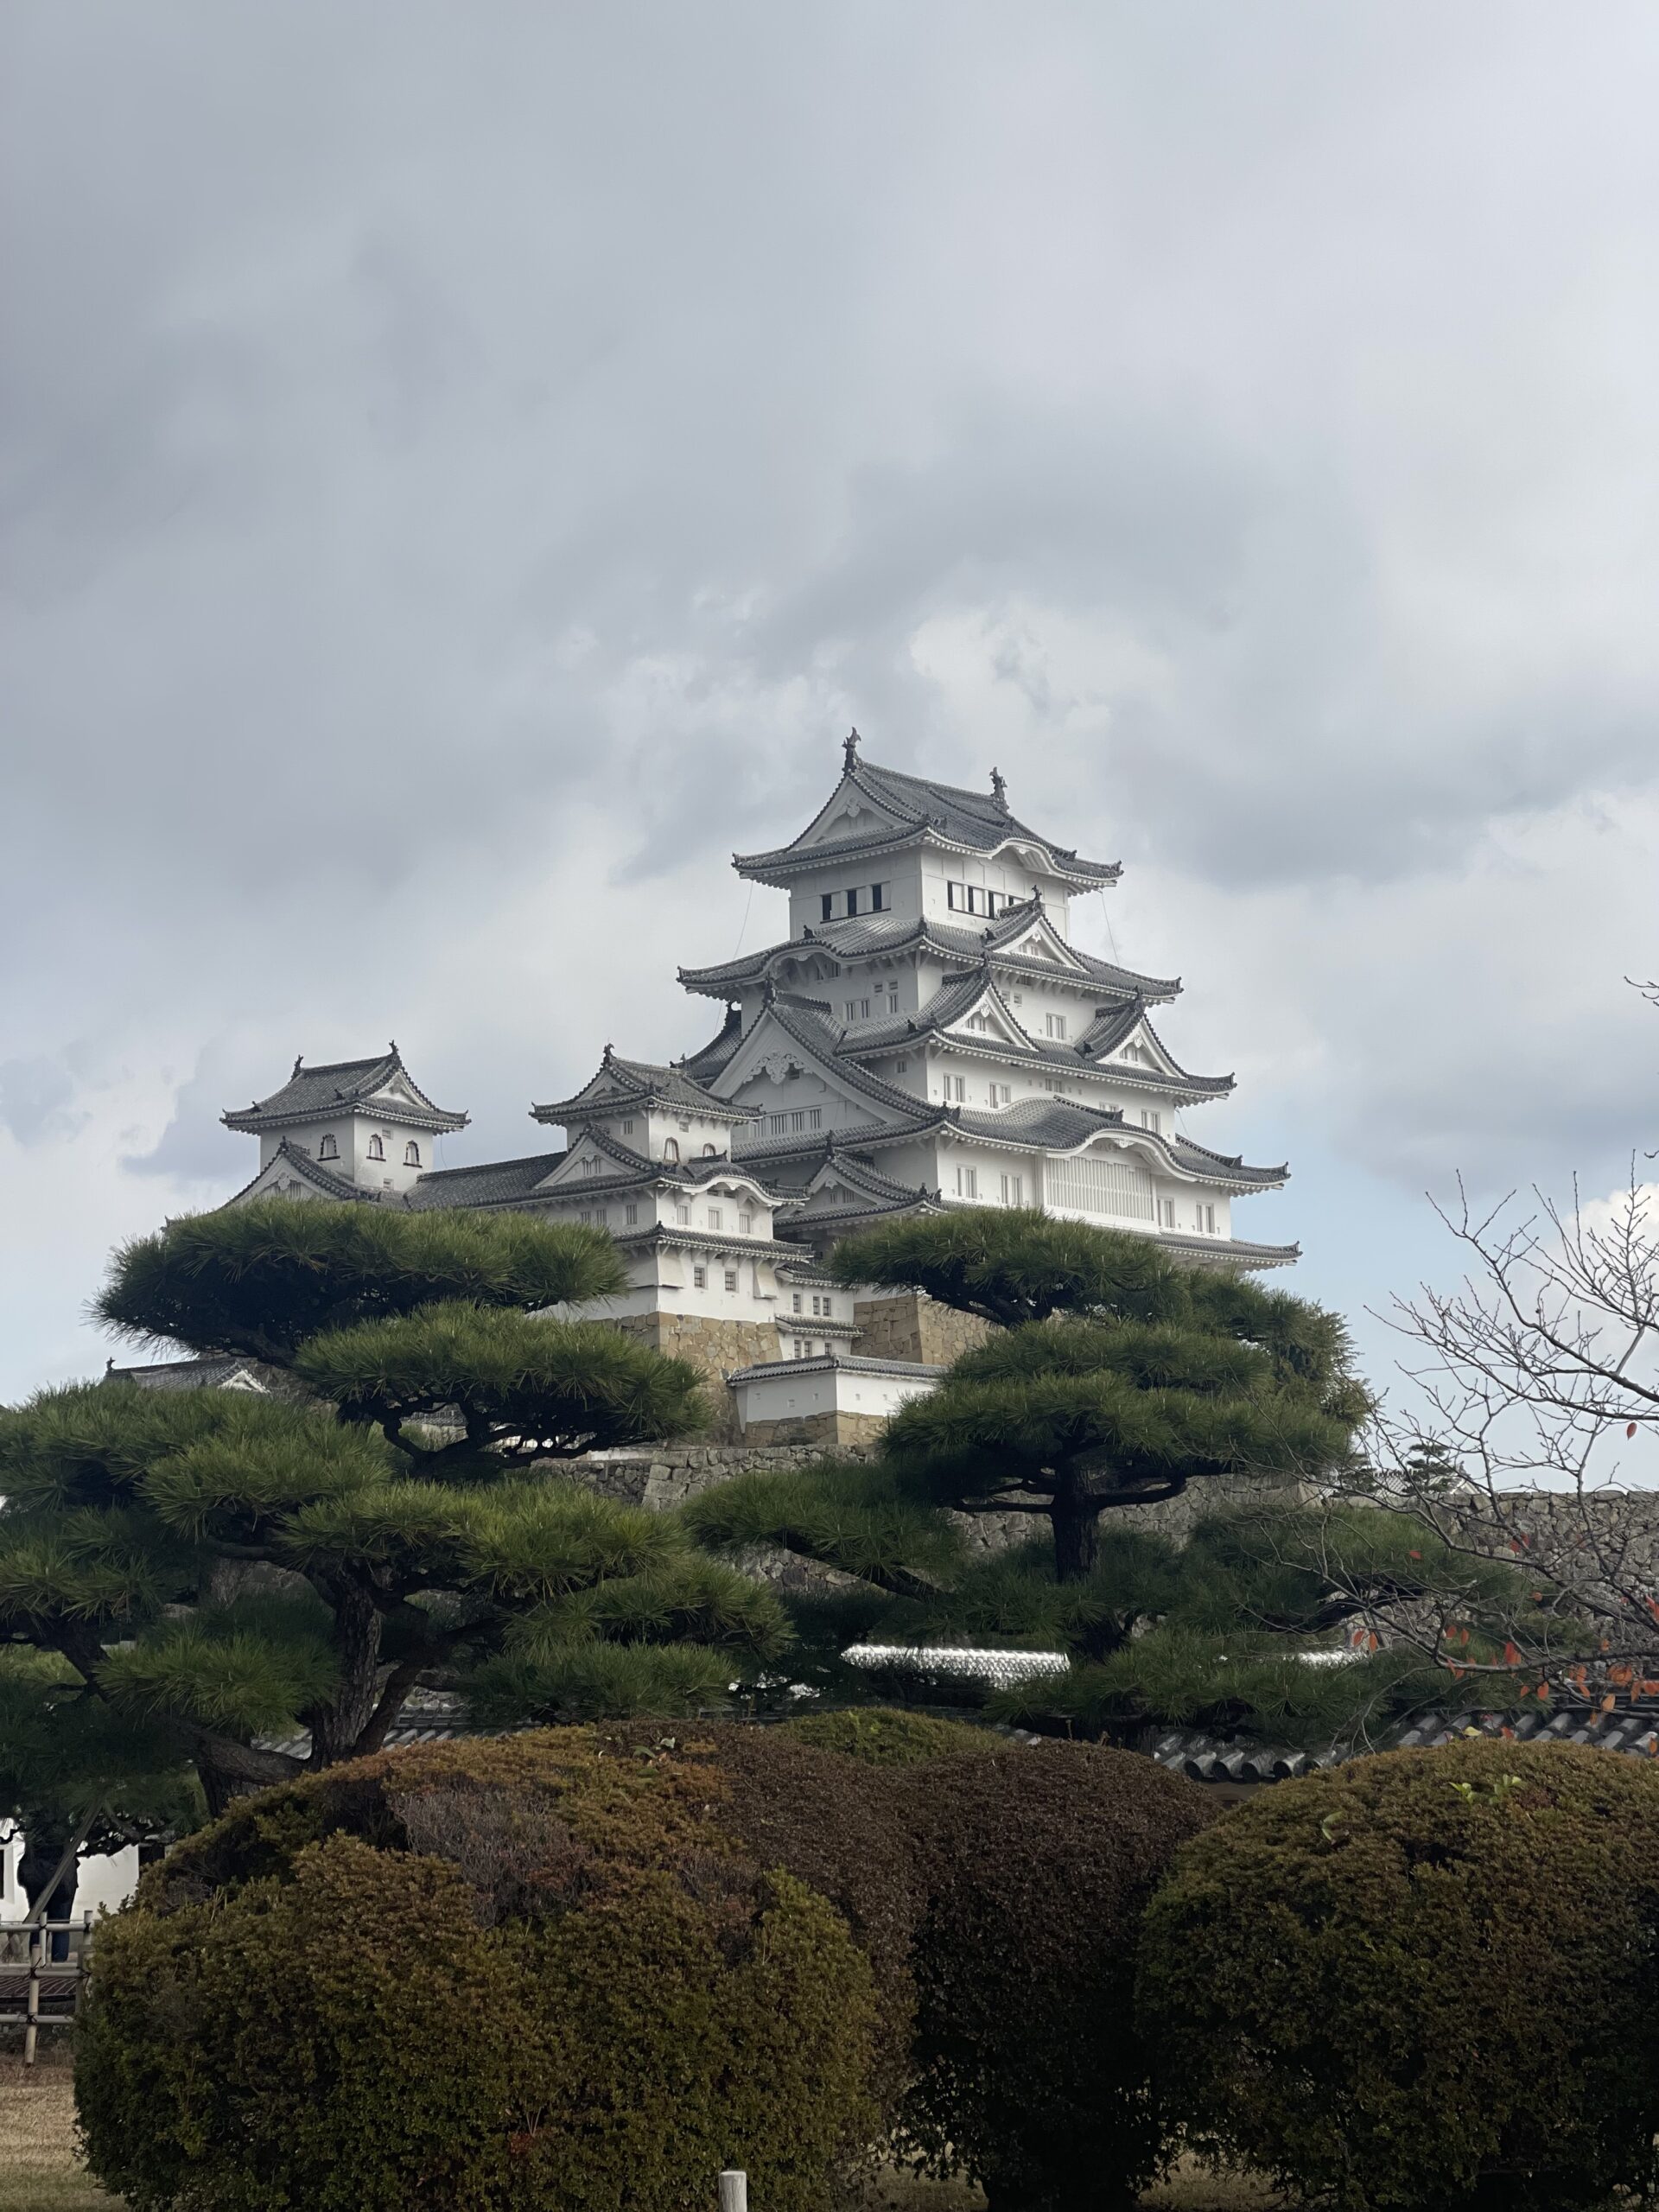 Il Castello di Himeji: una fortezza millenaria nel cuore del Giappone